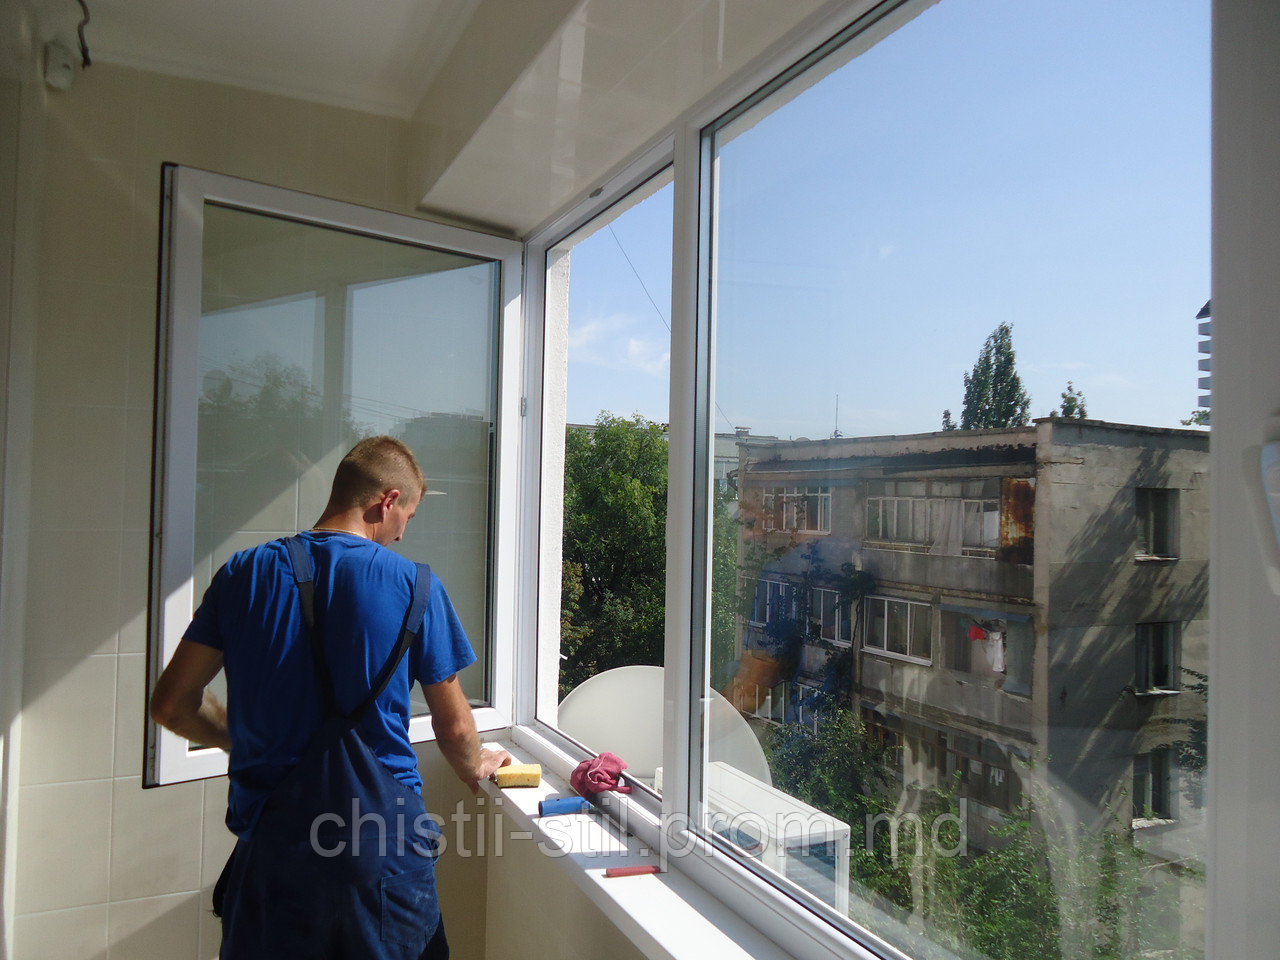 Мытье окон ремонта. Мойка окон. Мытье окон и балконов. Мойка балконных окон. Мытье балконного окна.